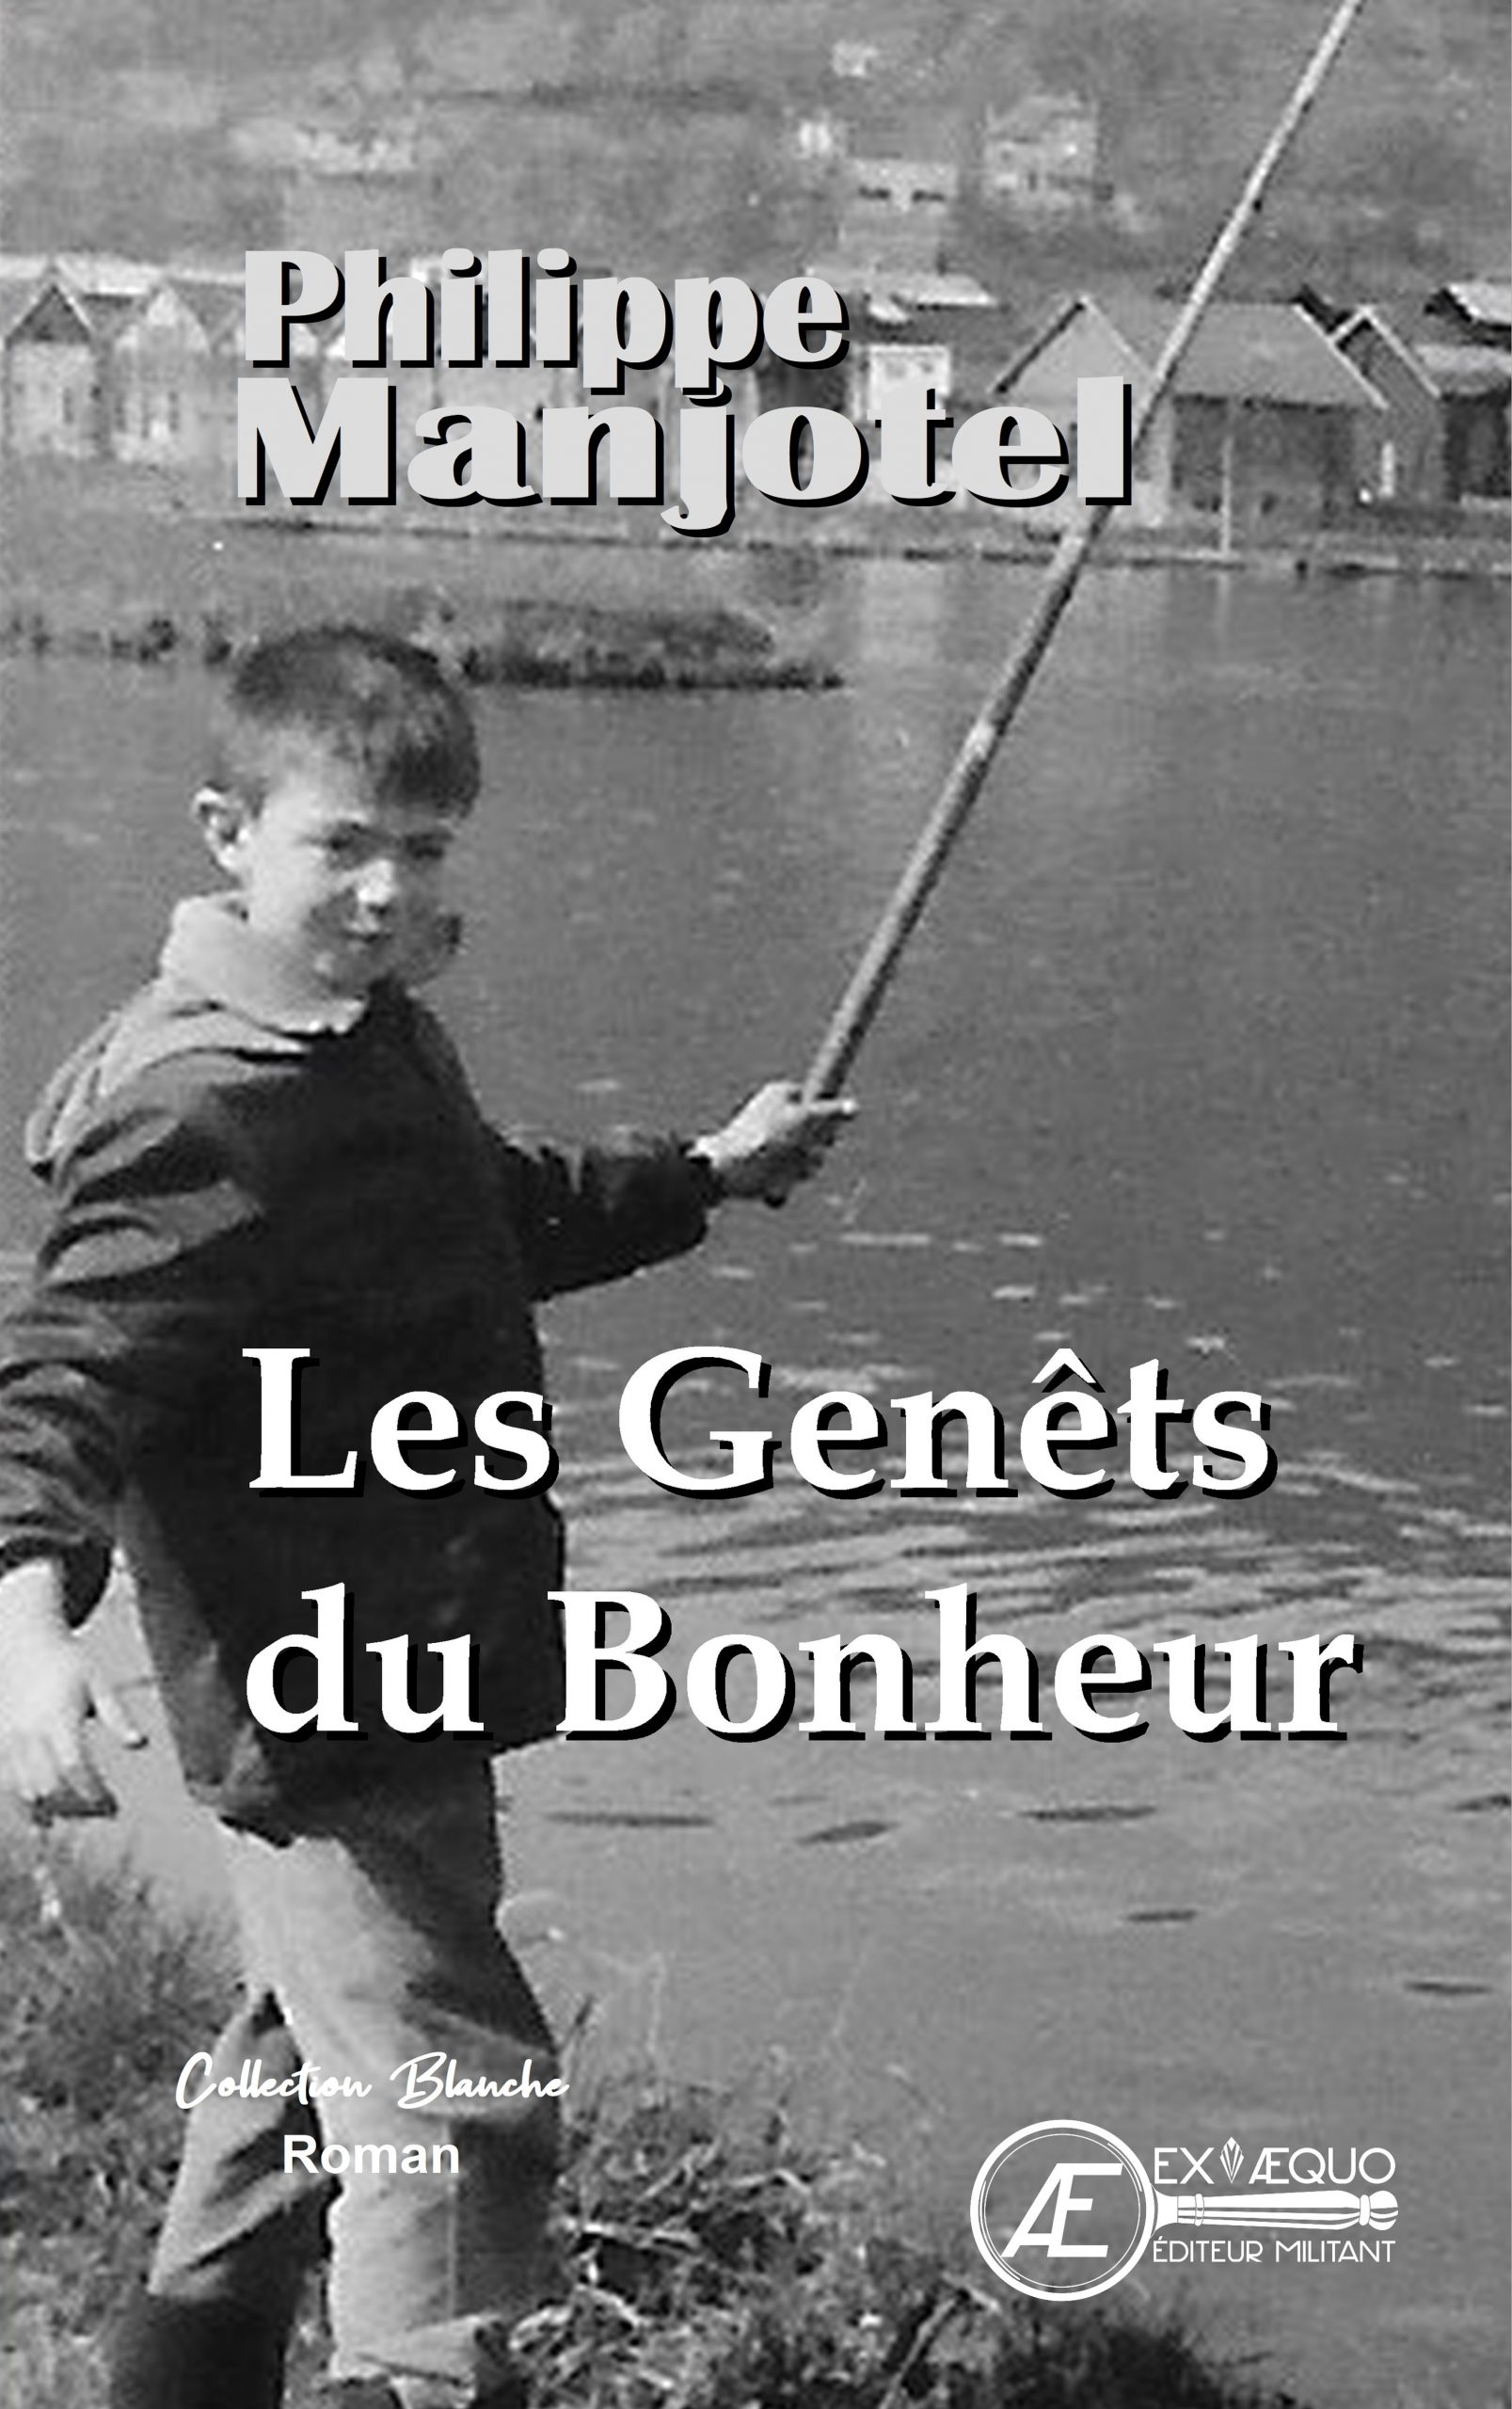 You are currently viewing Les genêts du bonheur, de Philippe Manjotel